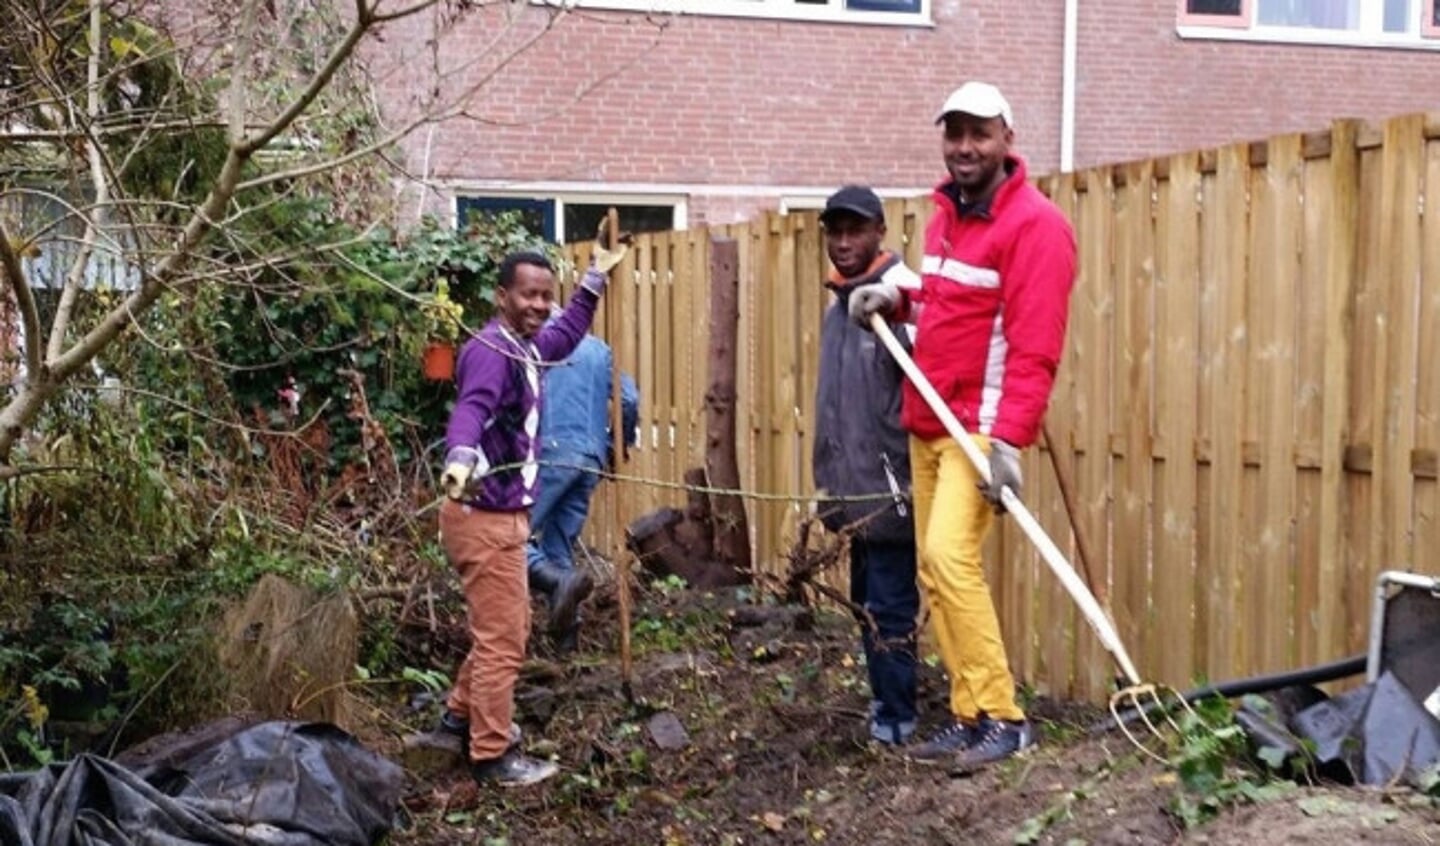  Vier AZC-vrijwilligers aan het werk in een tuin.